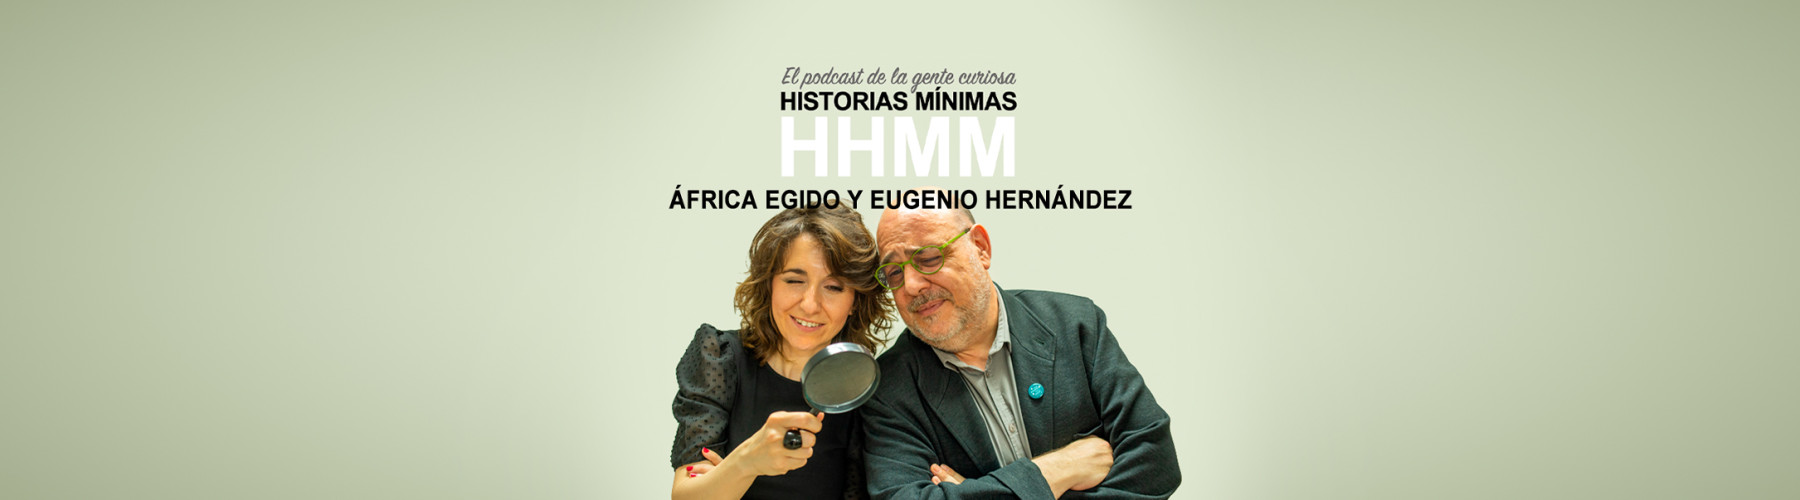 Historias Mínimas es un podcast presentado por África Egido y Eugenio Hernández en el que se bucea, durante treinta minutos, en anécdotas curiosas y a menudo desconocidas por el gran público.